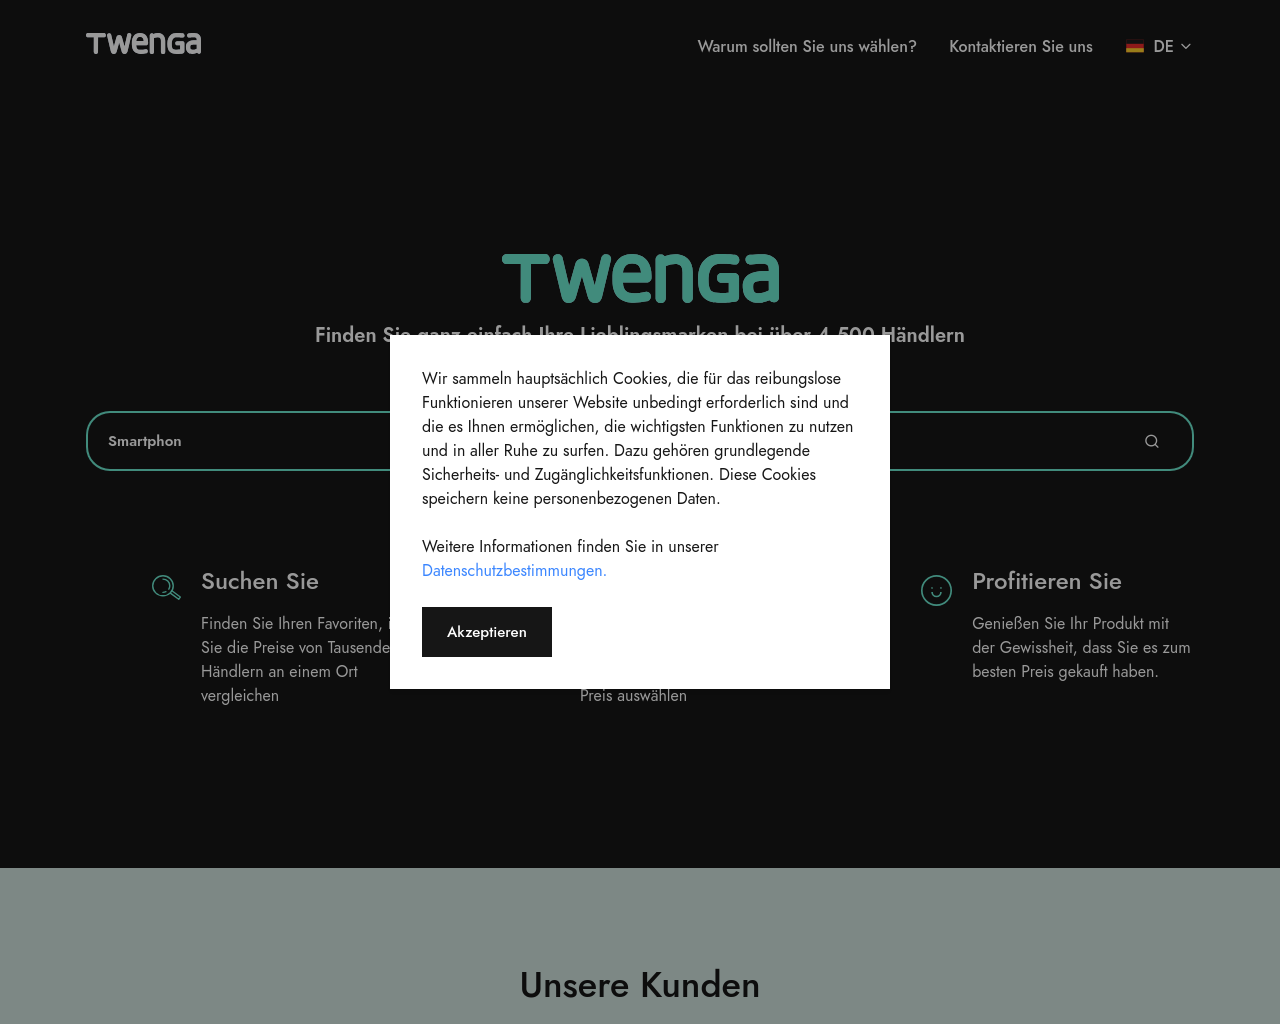 twenga.de